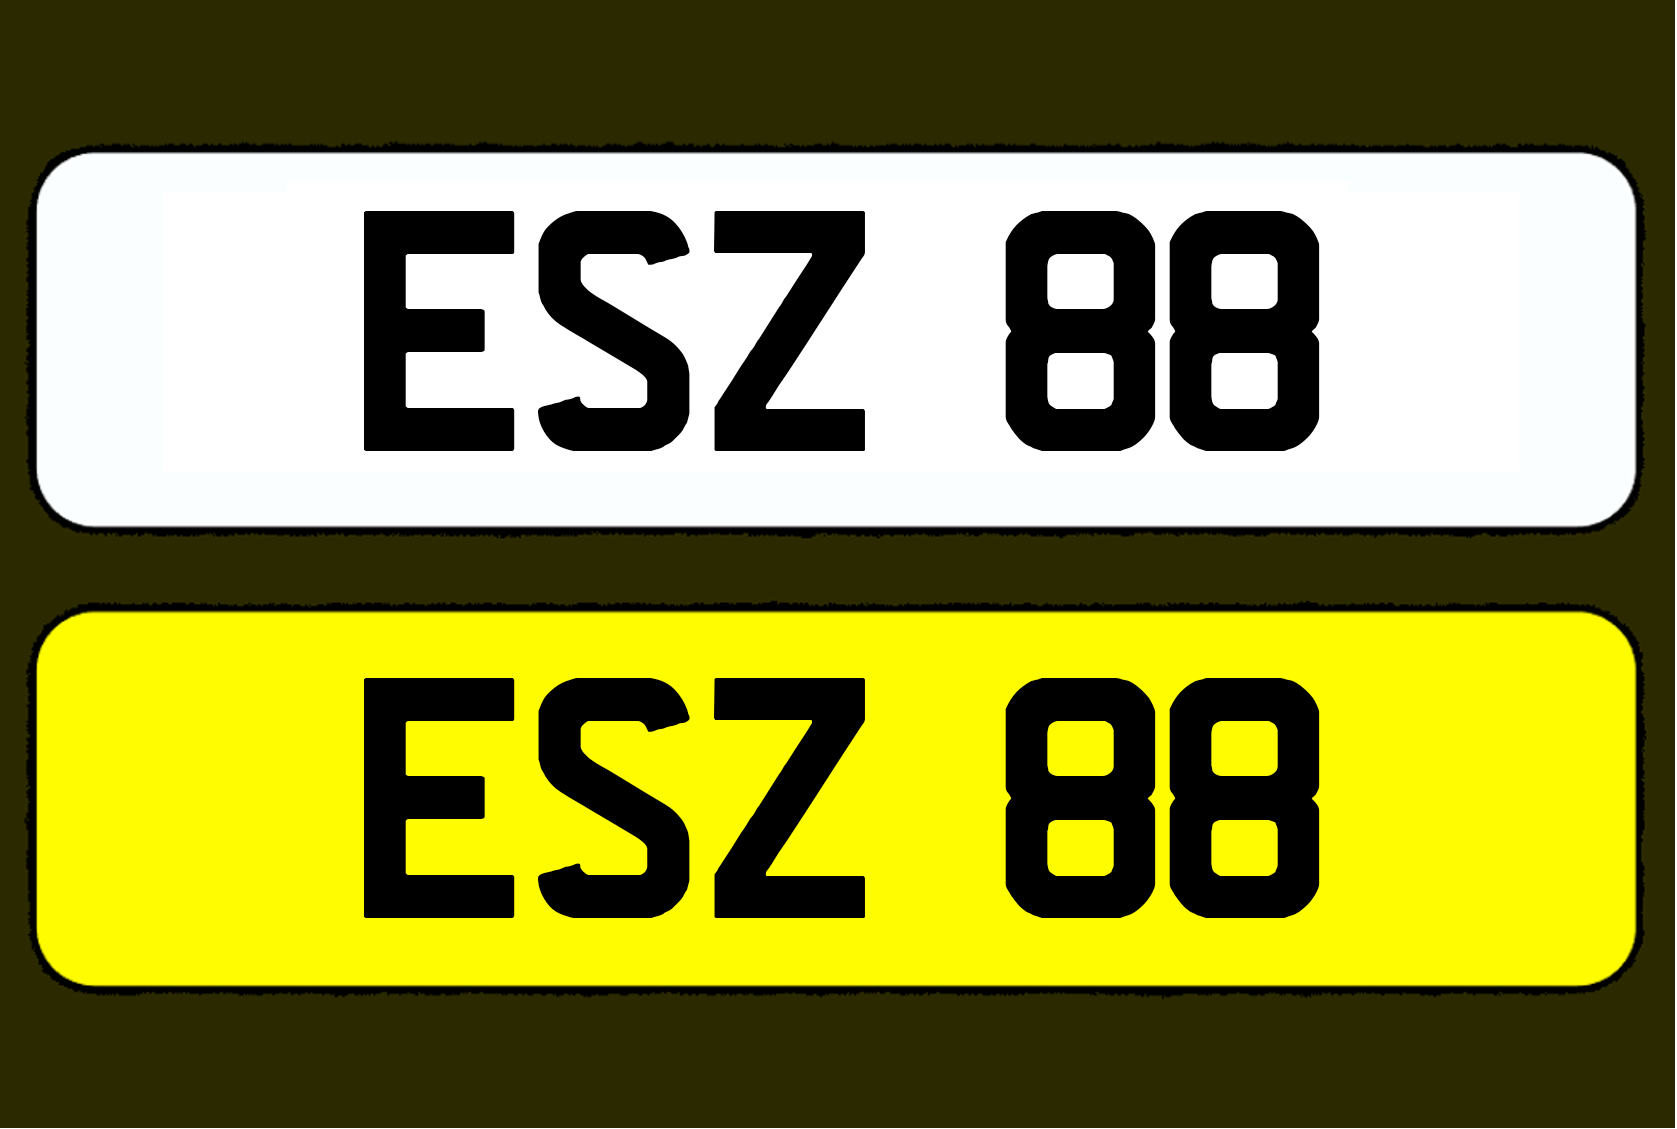 ESZ 88